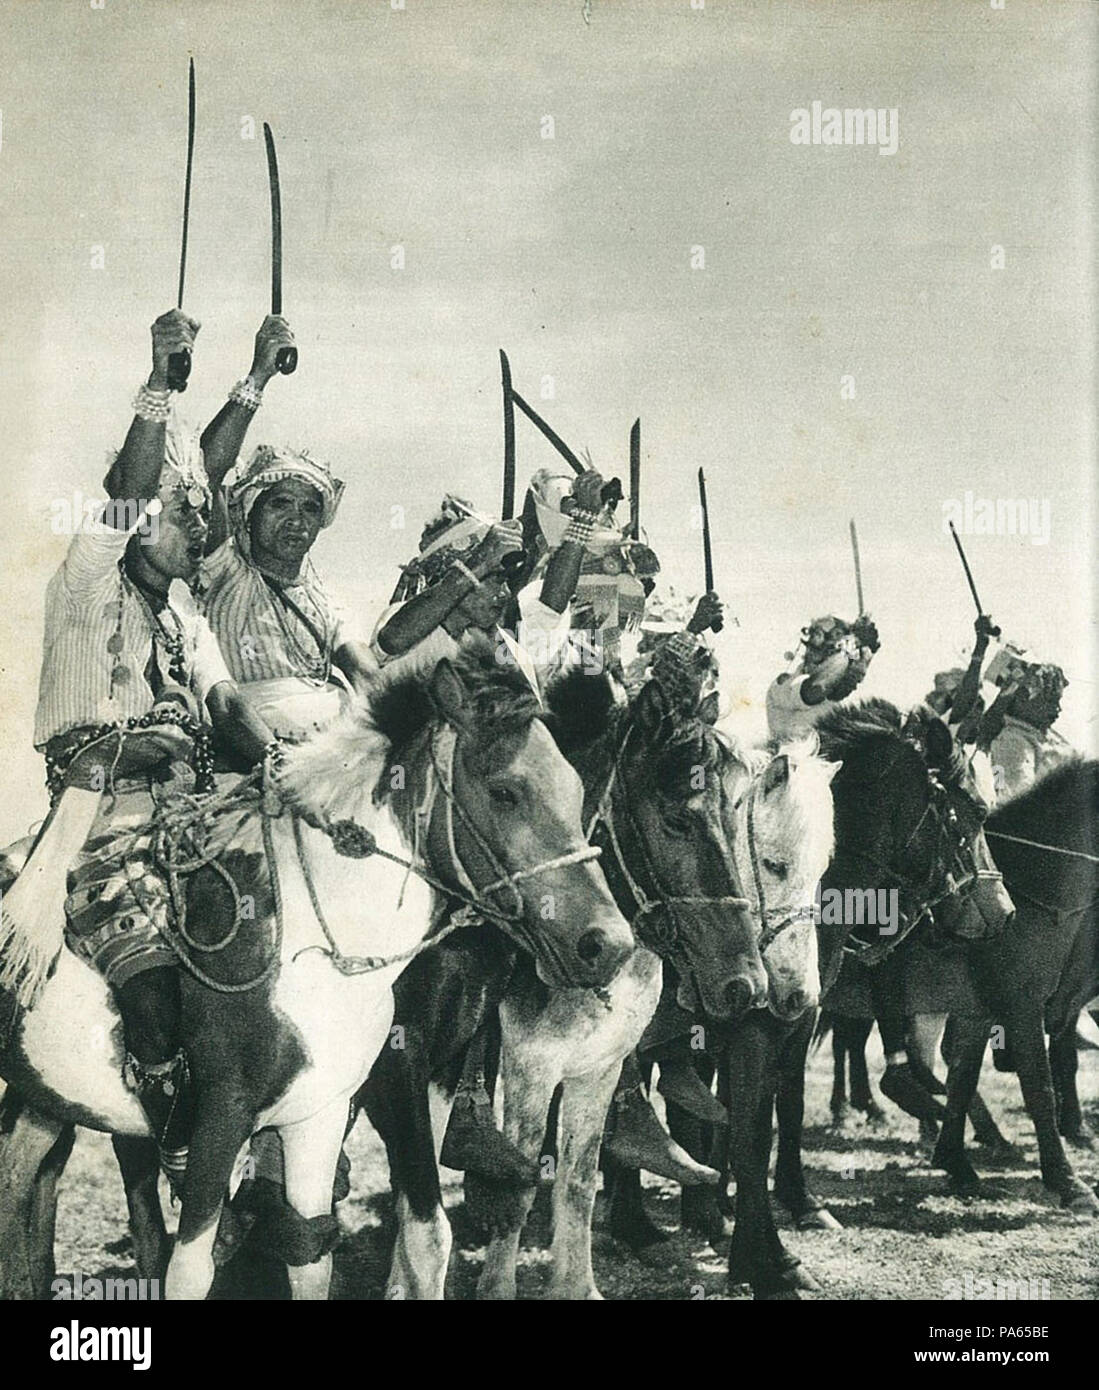 313 Timorese warriors, Indonesia Tanah Airku, p66 Stock Photo